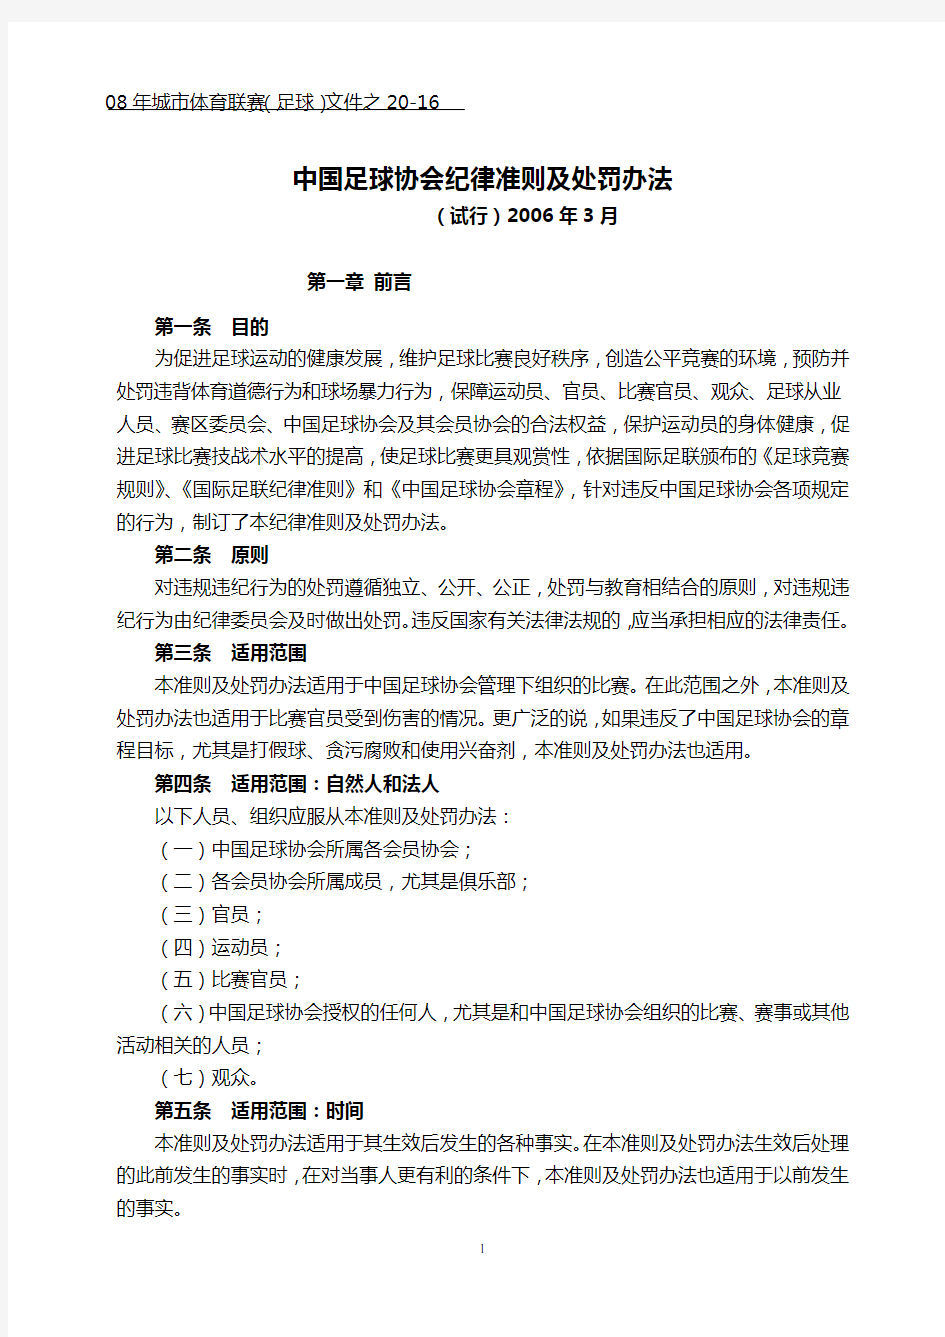 中国足球协会纪律准则及处罚办法